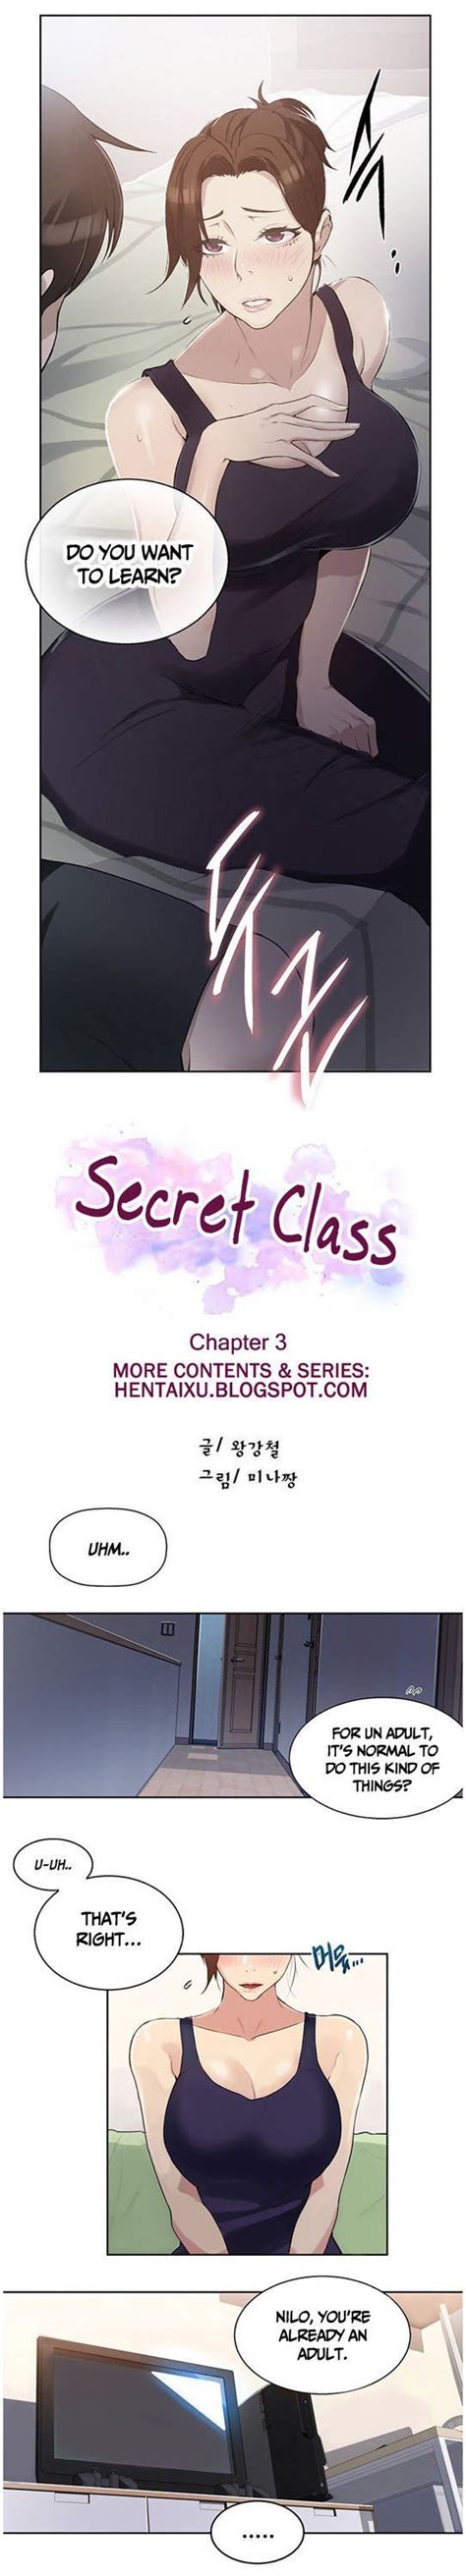 Read Secret Class Manga English All Chapters Online Free Mangakomi